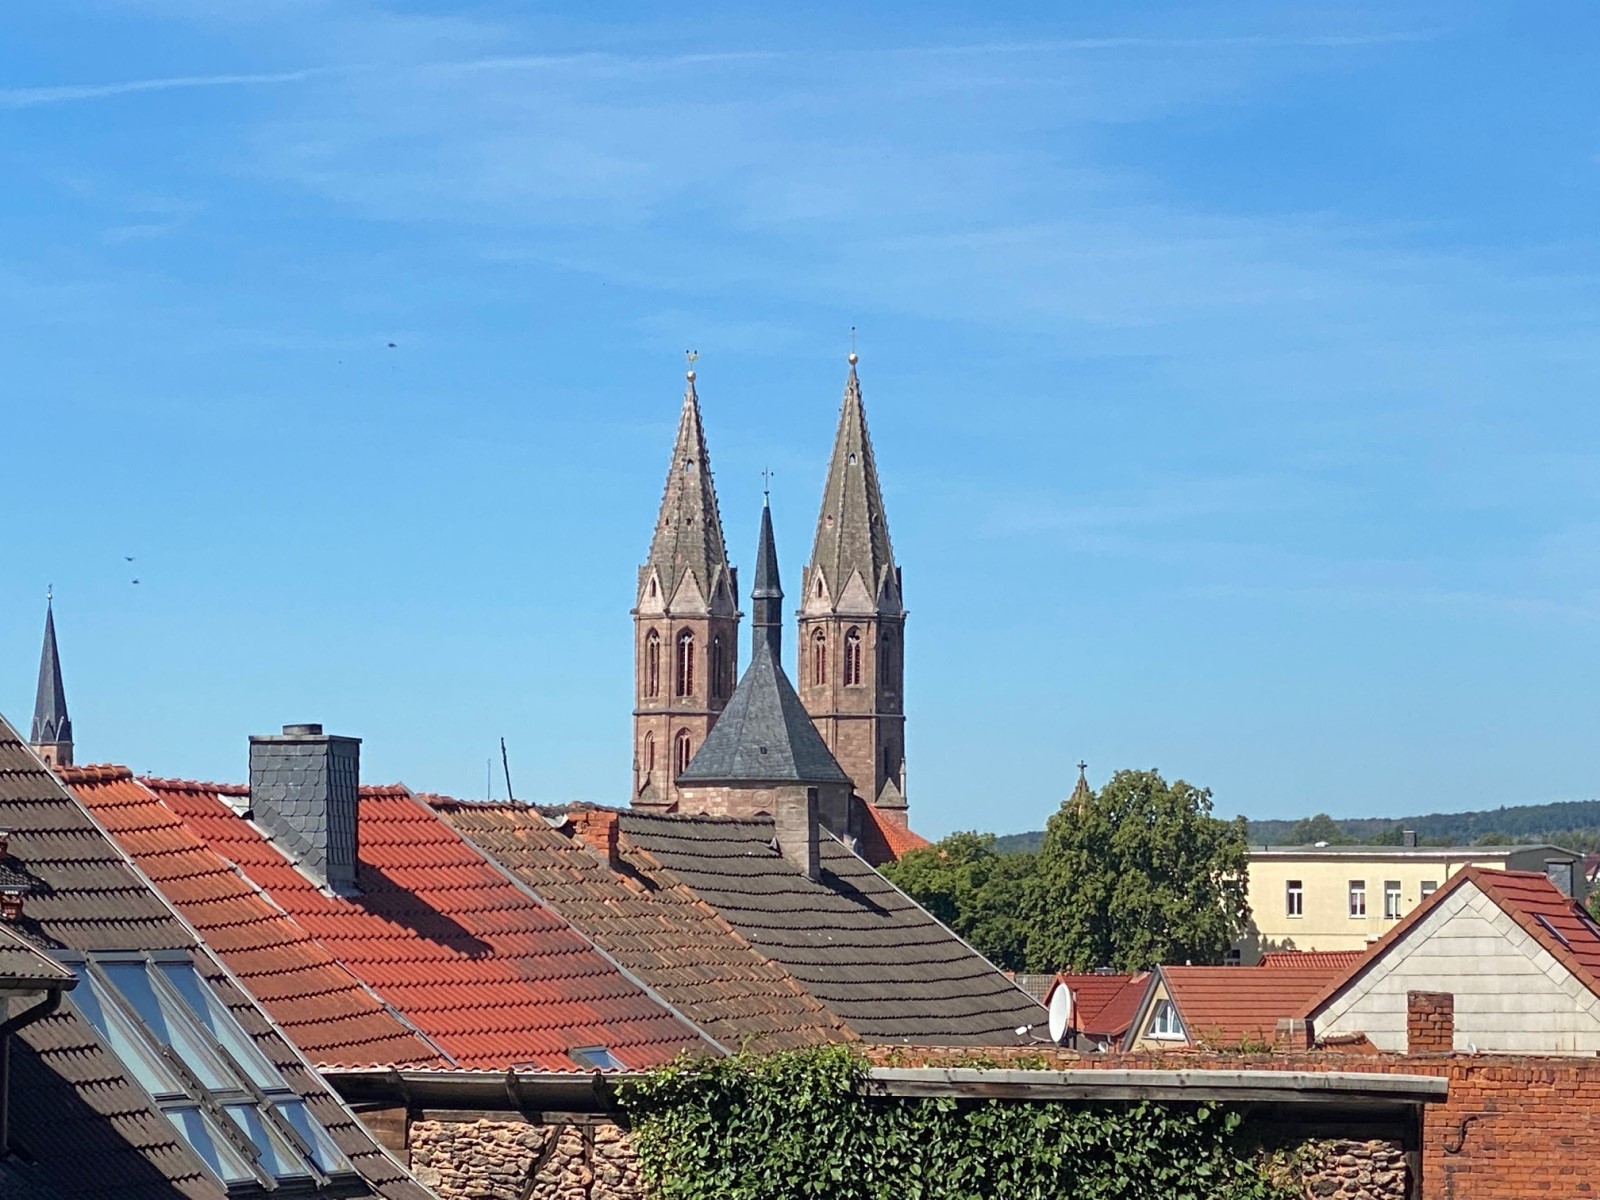 St. Marien in Heilbad Heiligenstadt